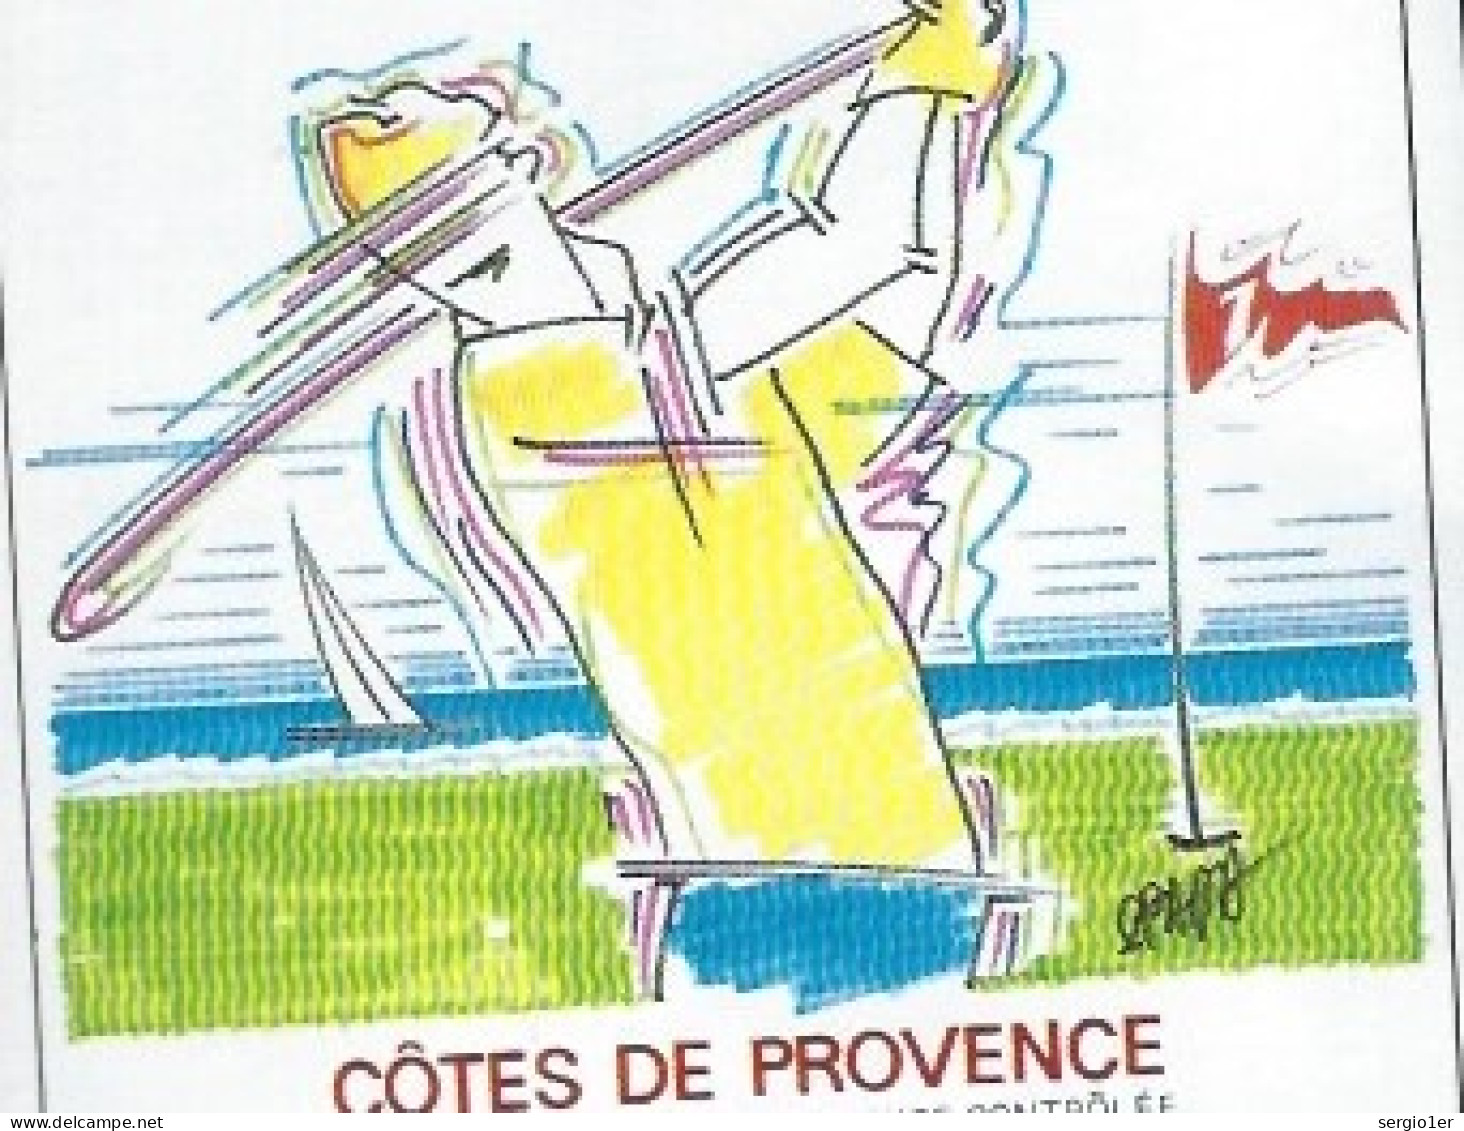 Etiquette Vin  Côtes De Provence  La Cuvée Du Golfeur Domaine Des Myrtes  Barnarous La Londe Des Maures - Rosés